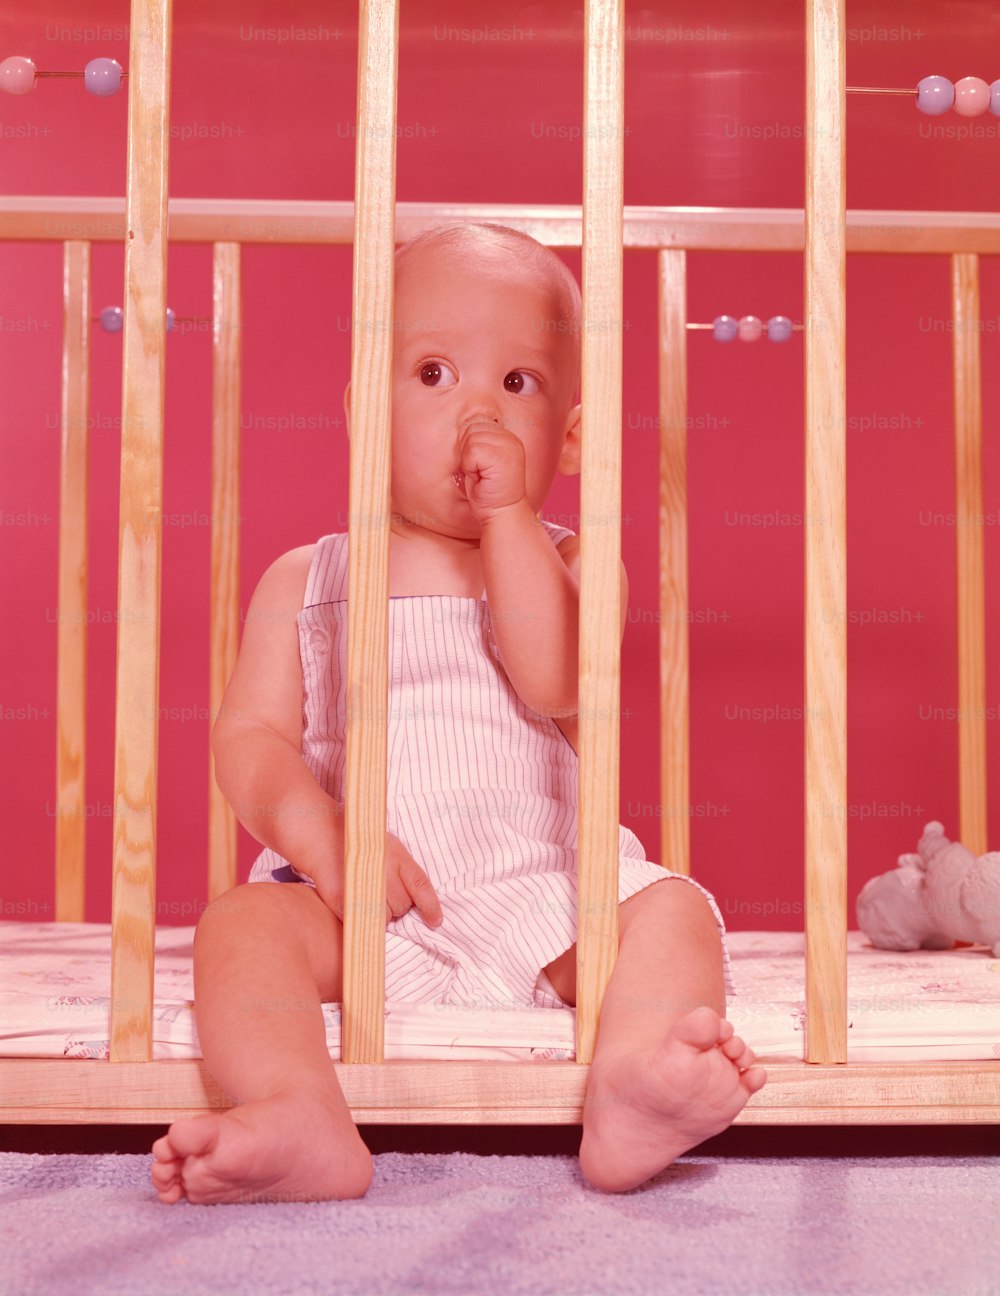 ESTADOS UNIDOS - POR VOLTA DE 1950: Bebê em cercadinho, chupando o dedo.